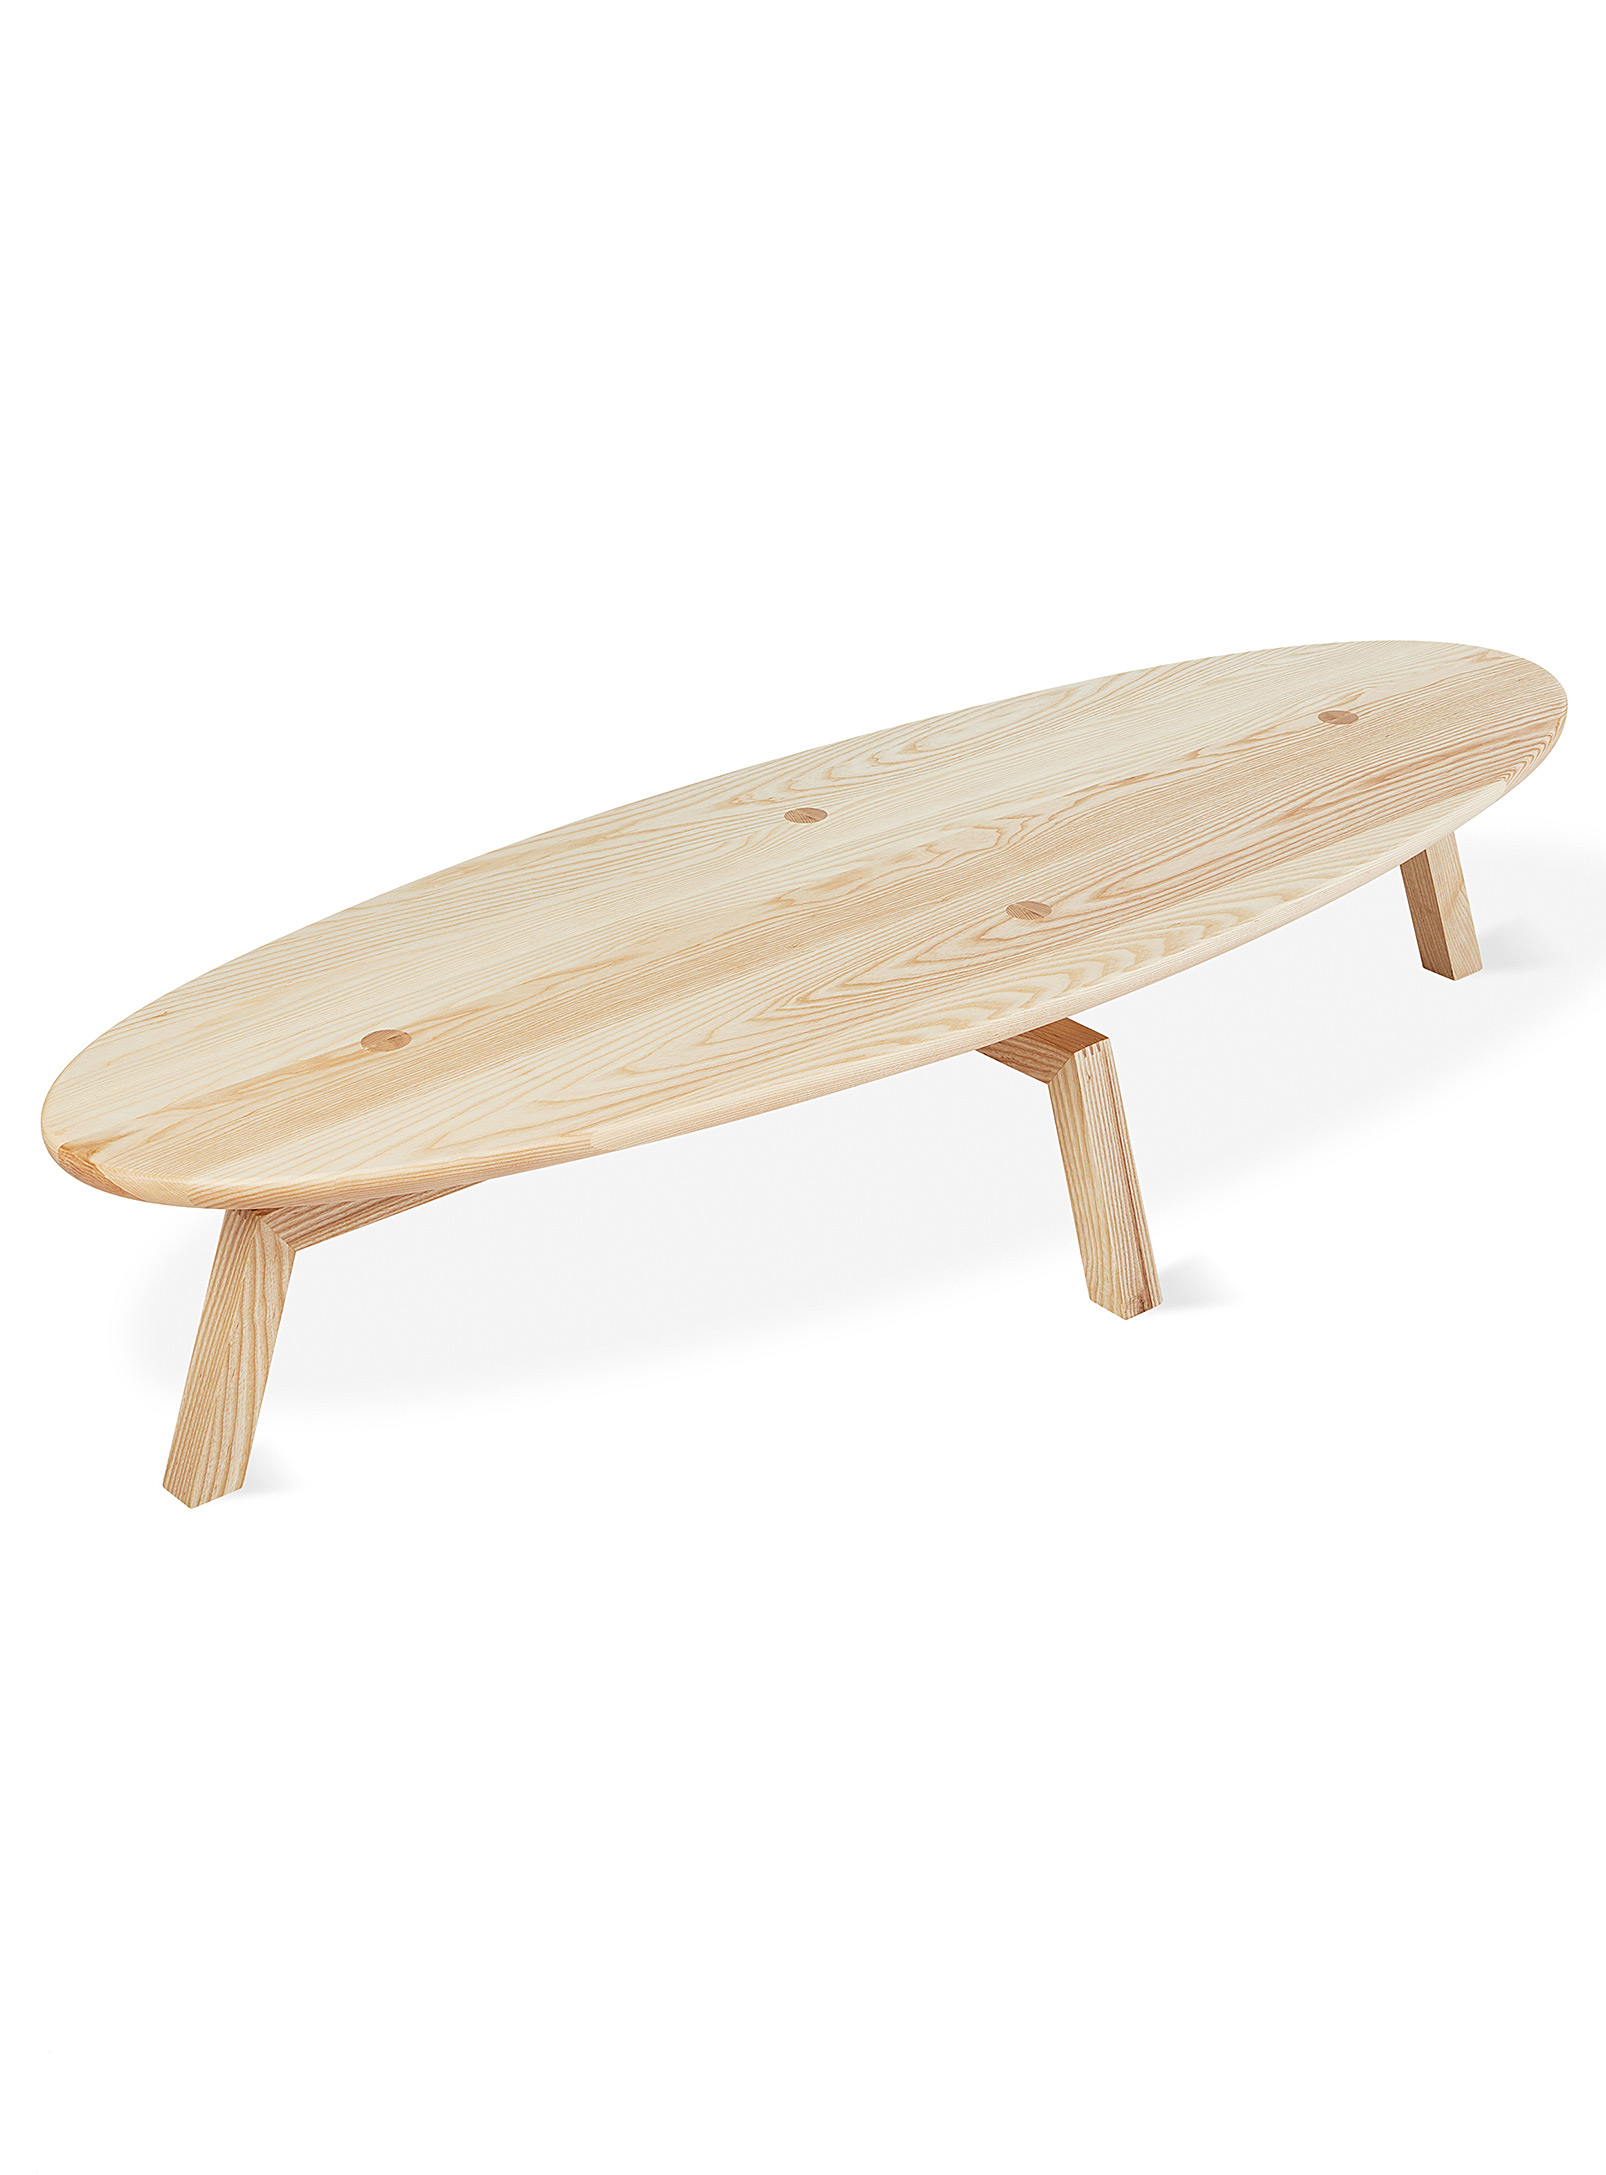 Gus - La grande table basse ovale en bois